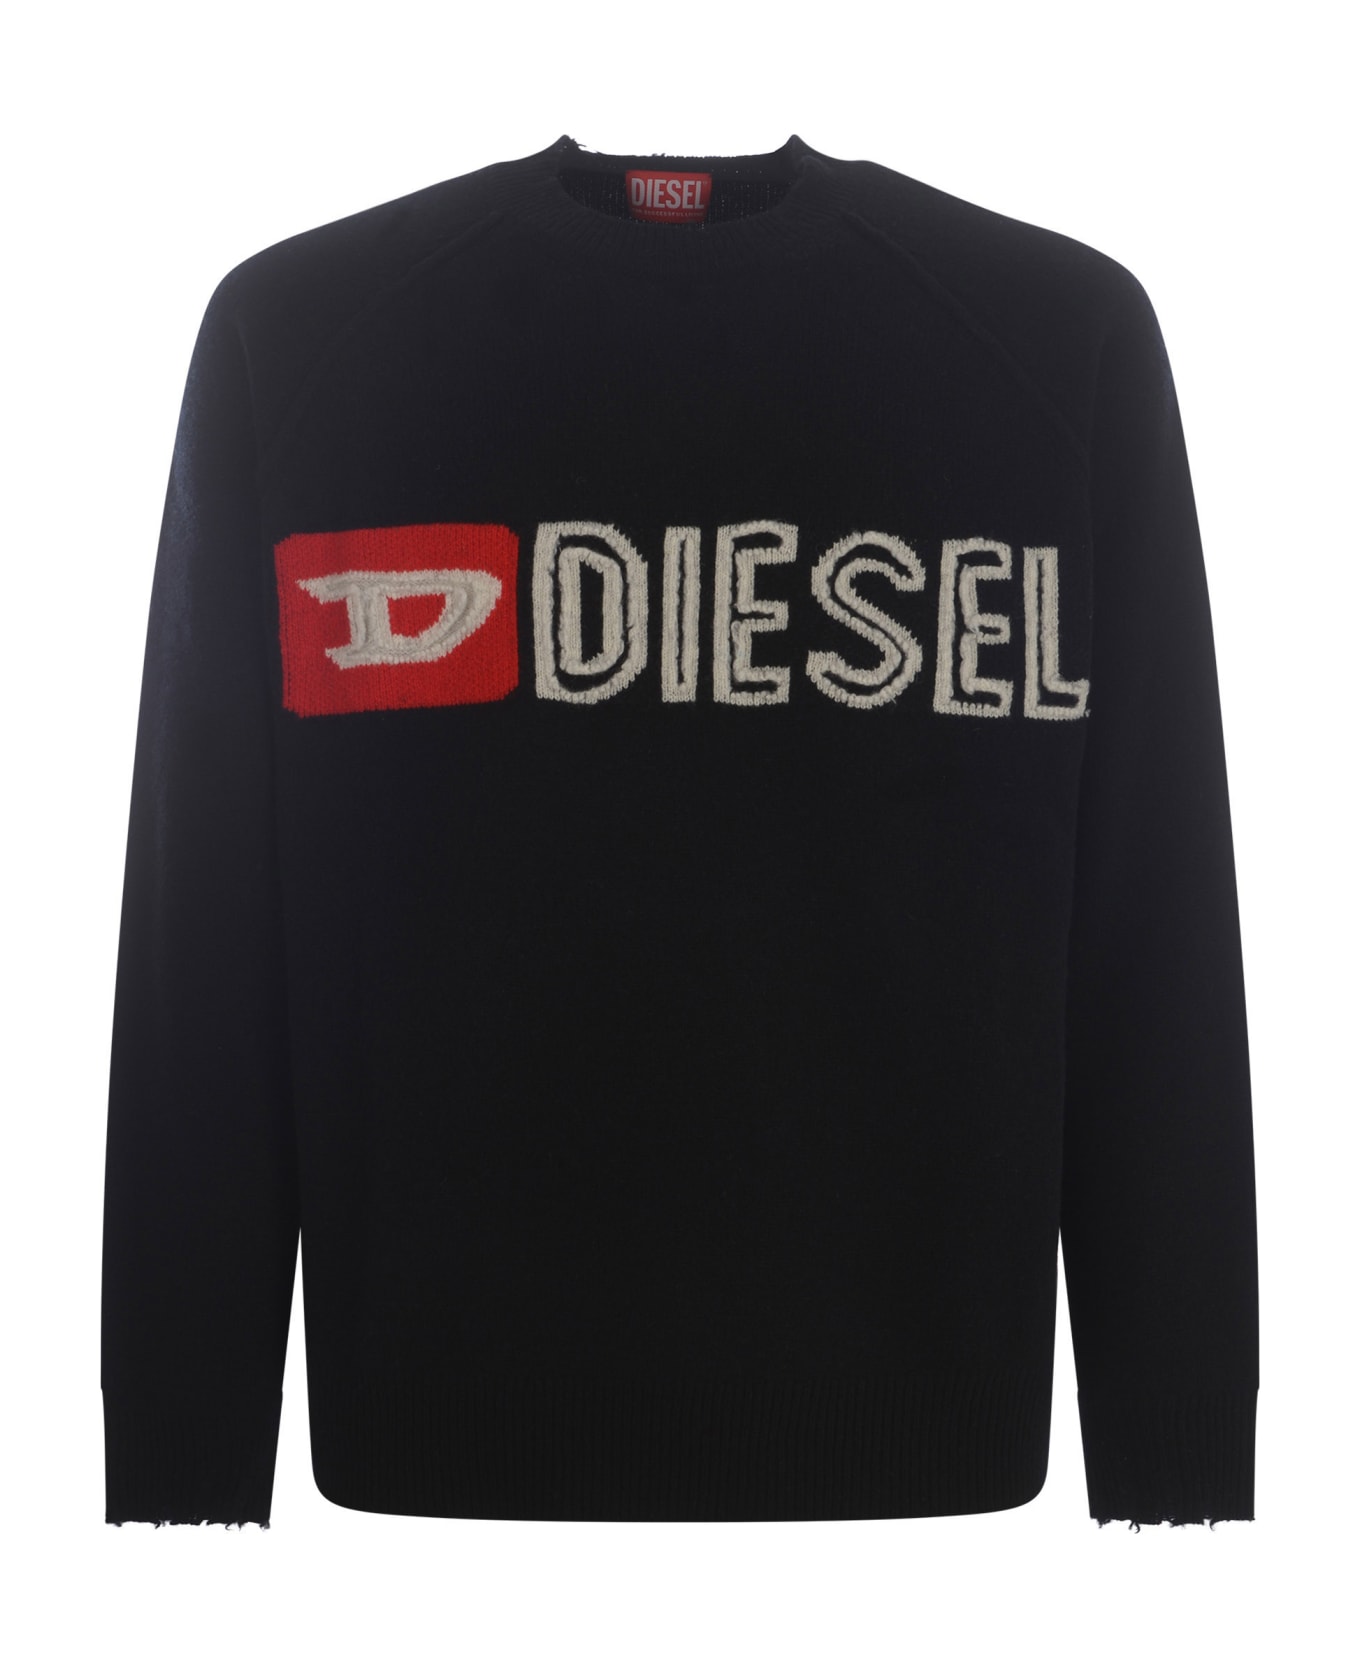 Diesel Sweater - Black